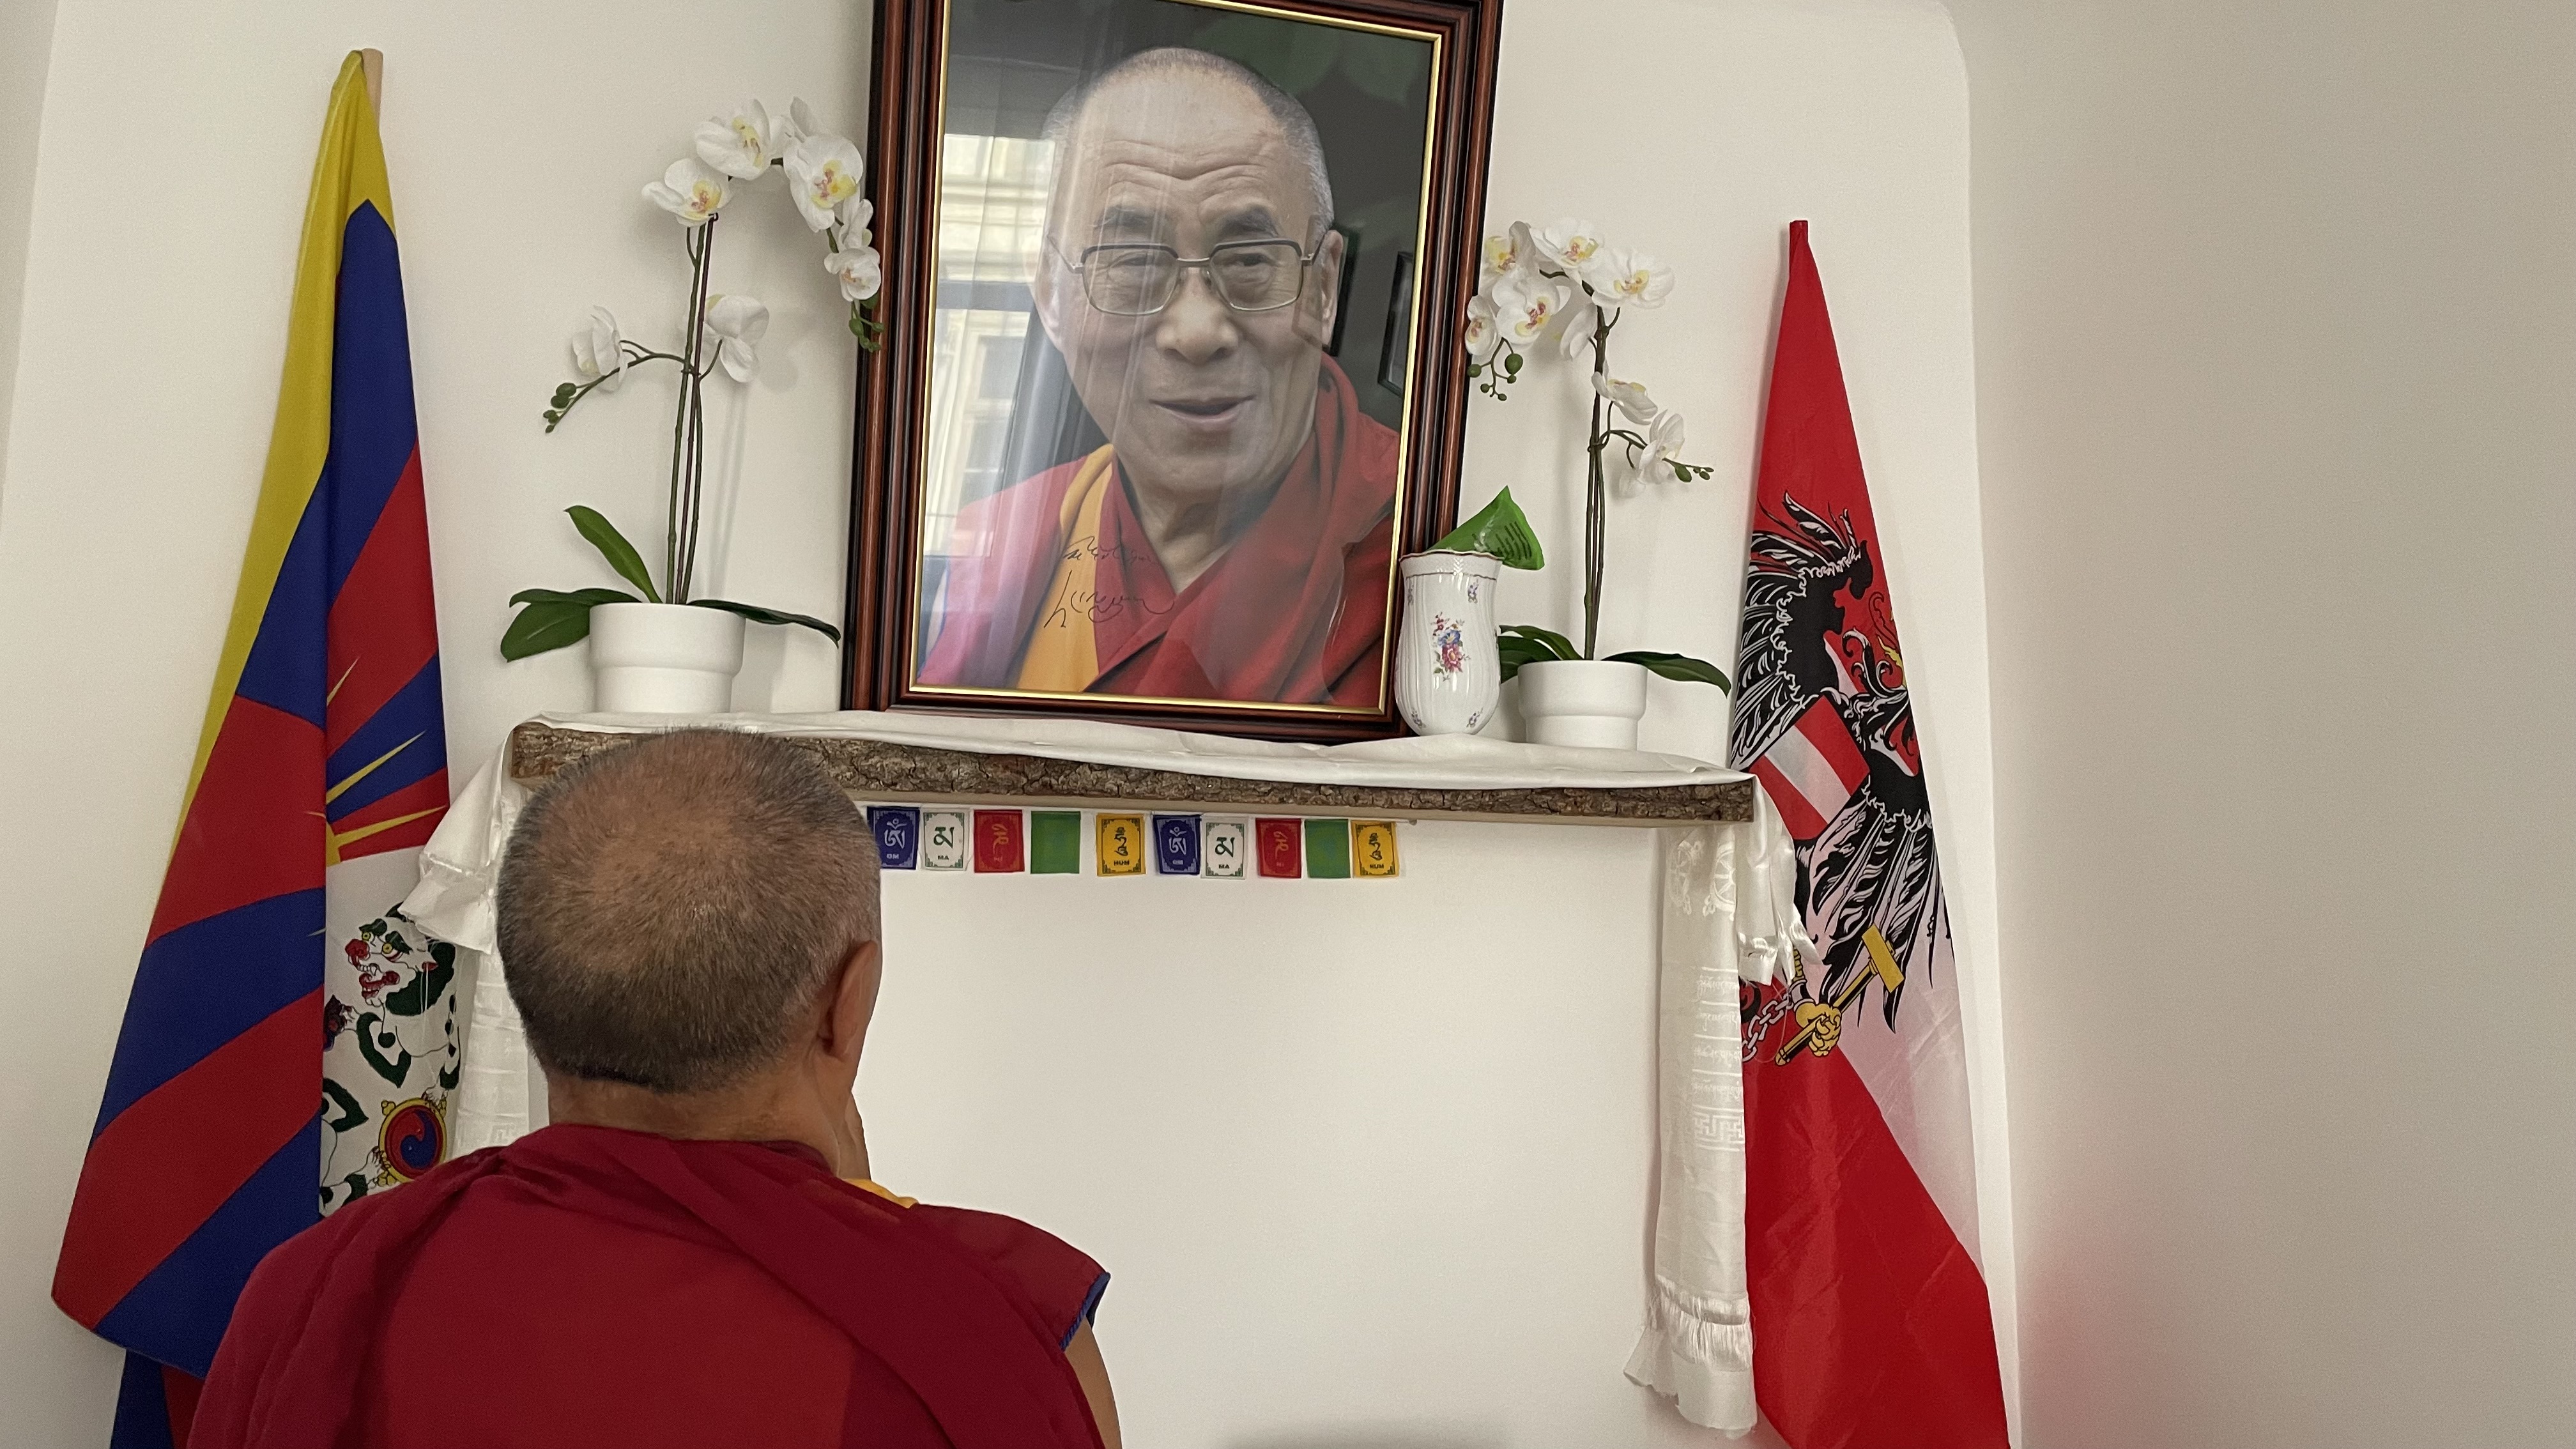 Gebet vor dem Foto seiner Heiligkeit dem 14. Dalai Lama von Tibet